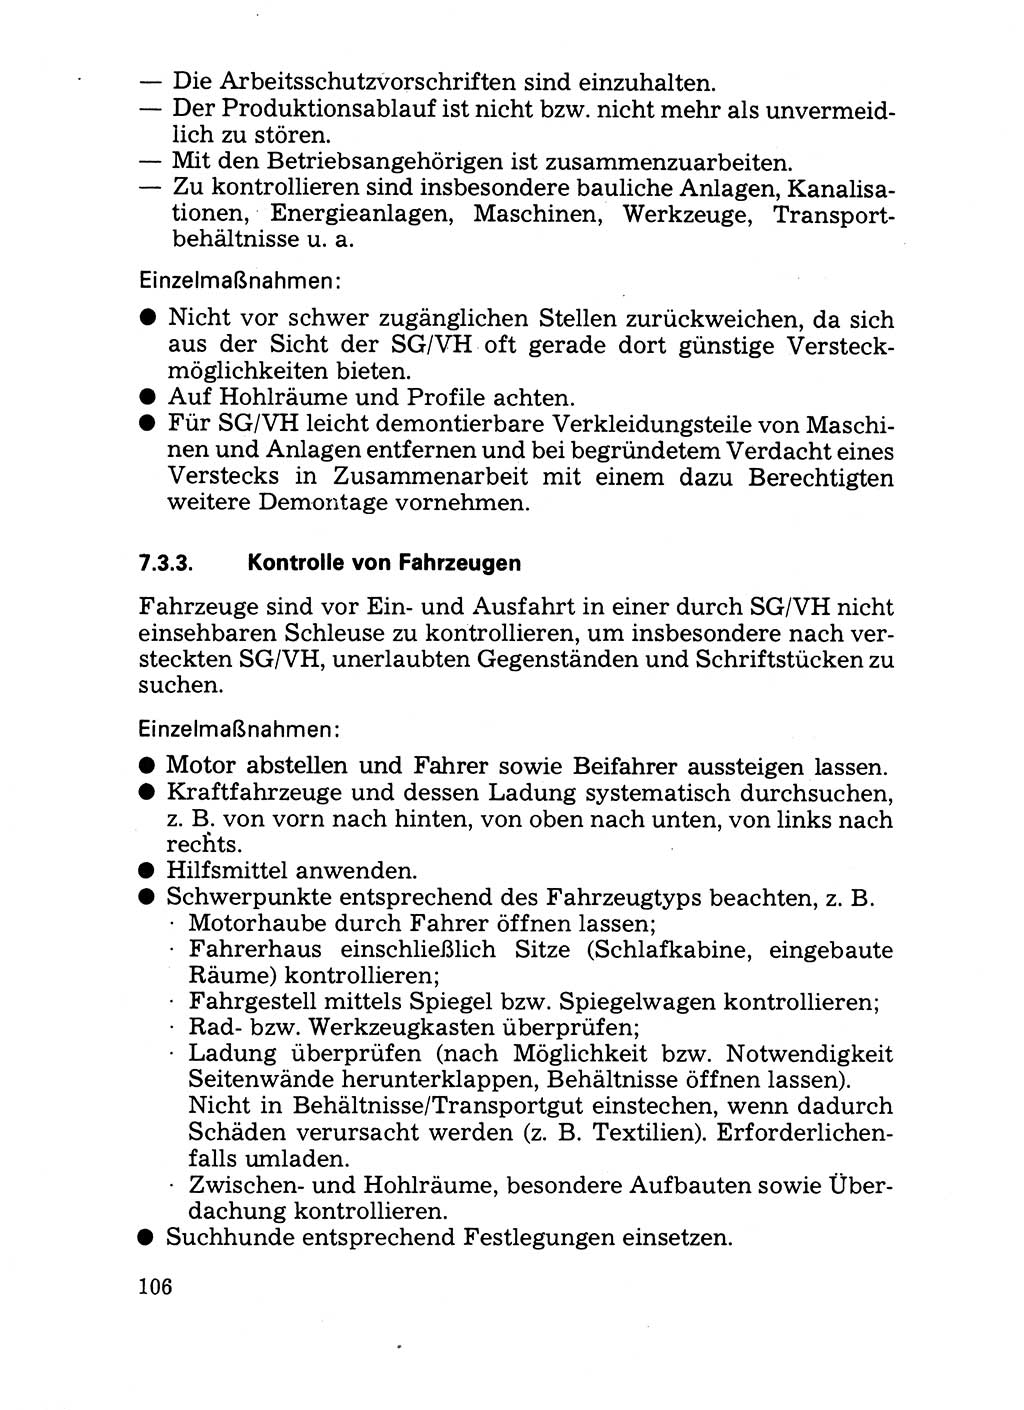 Handbuch für operative Dienste, Abteilung Strafvollzug (SV) [Ministerium des Innern (MdI) Deutsche Demokratische Republik (DDR)] 1981, Seite 106 (Hb. op. D. Abt. SV MdI DDR 1981, S. 106)